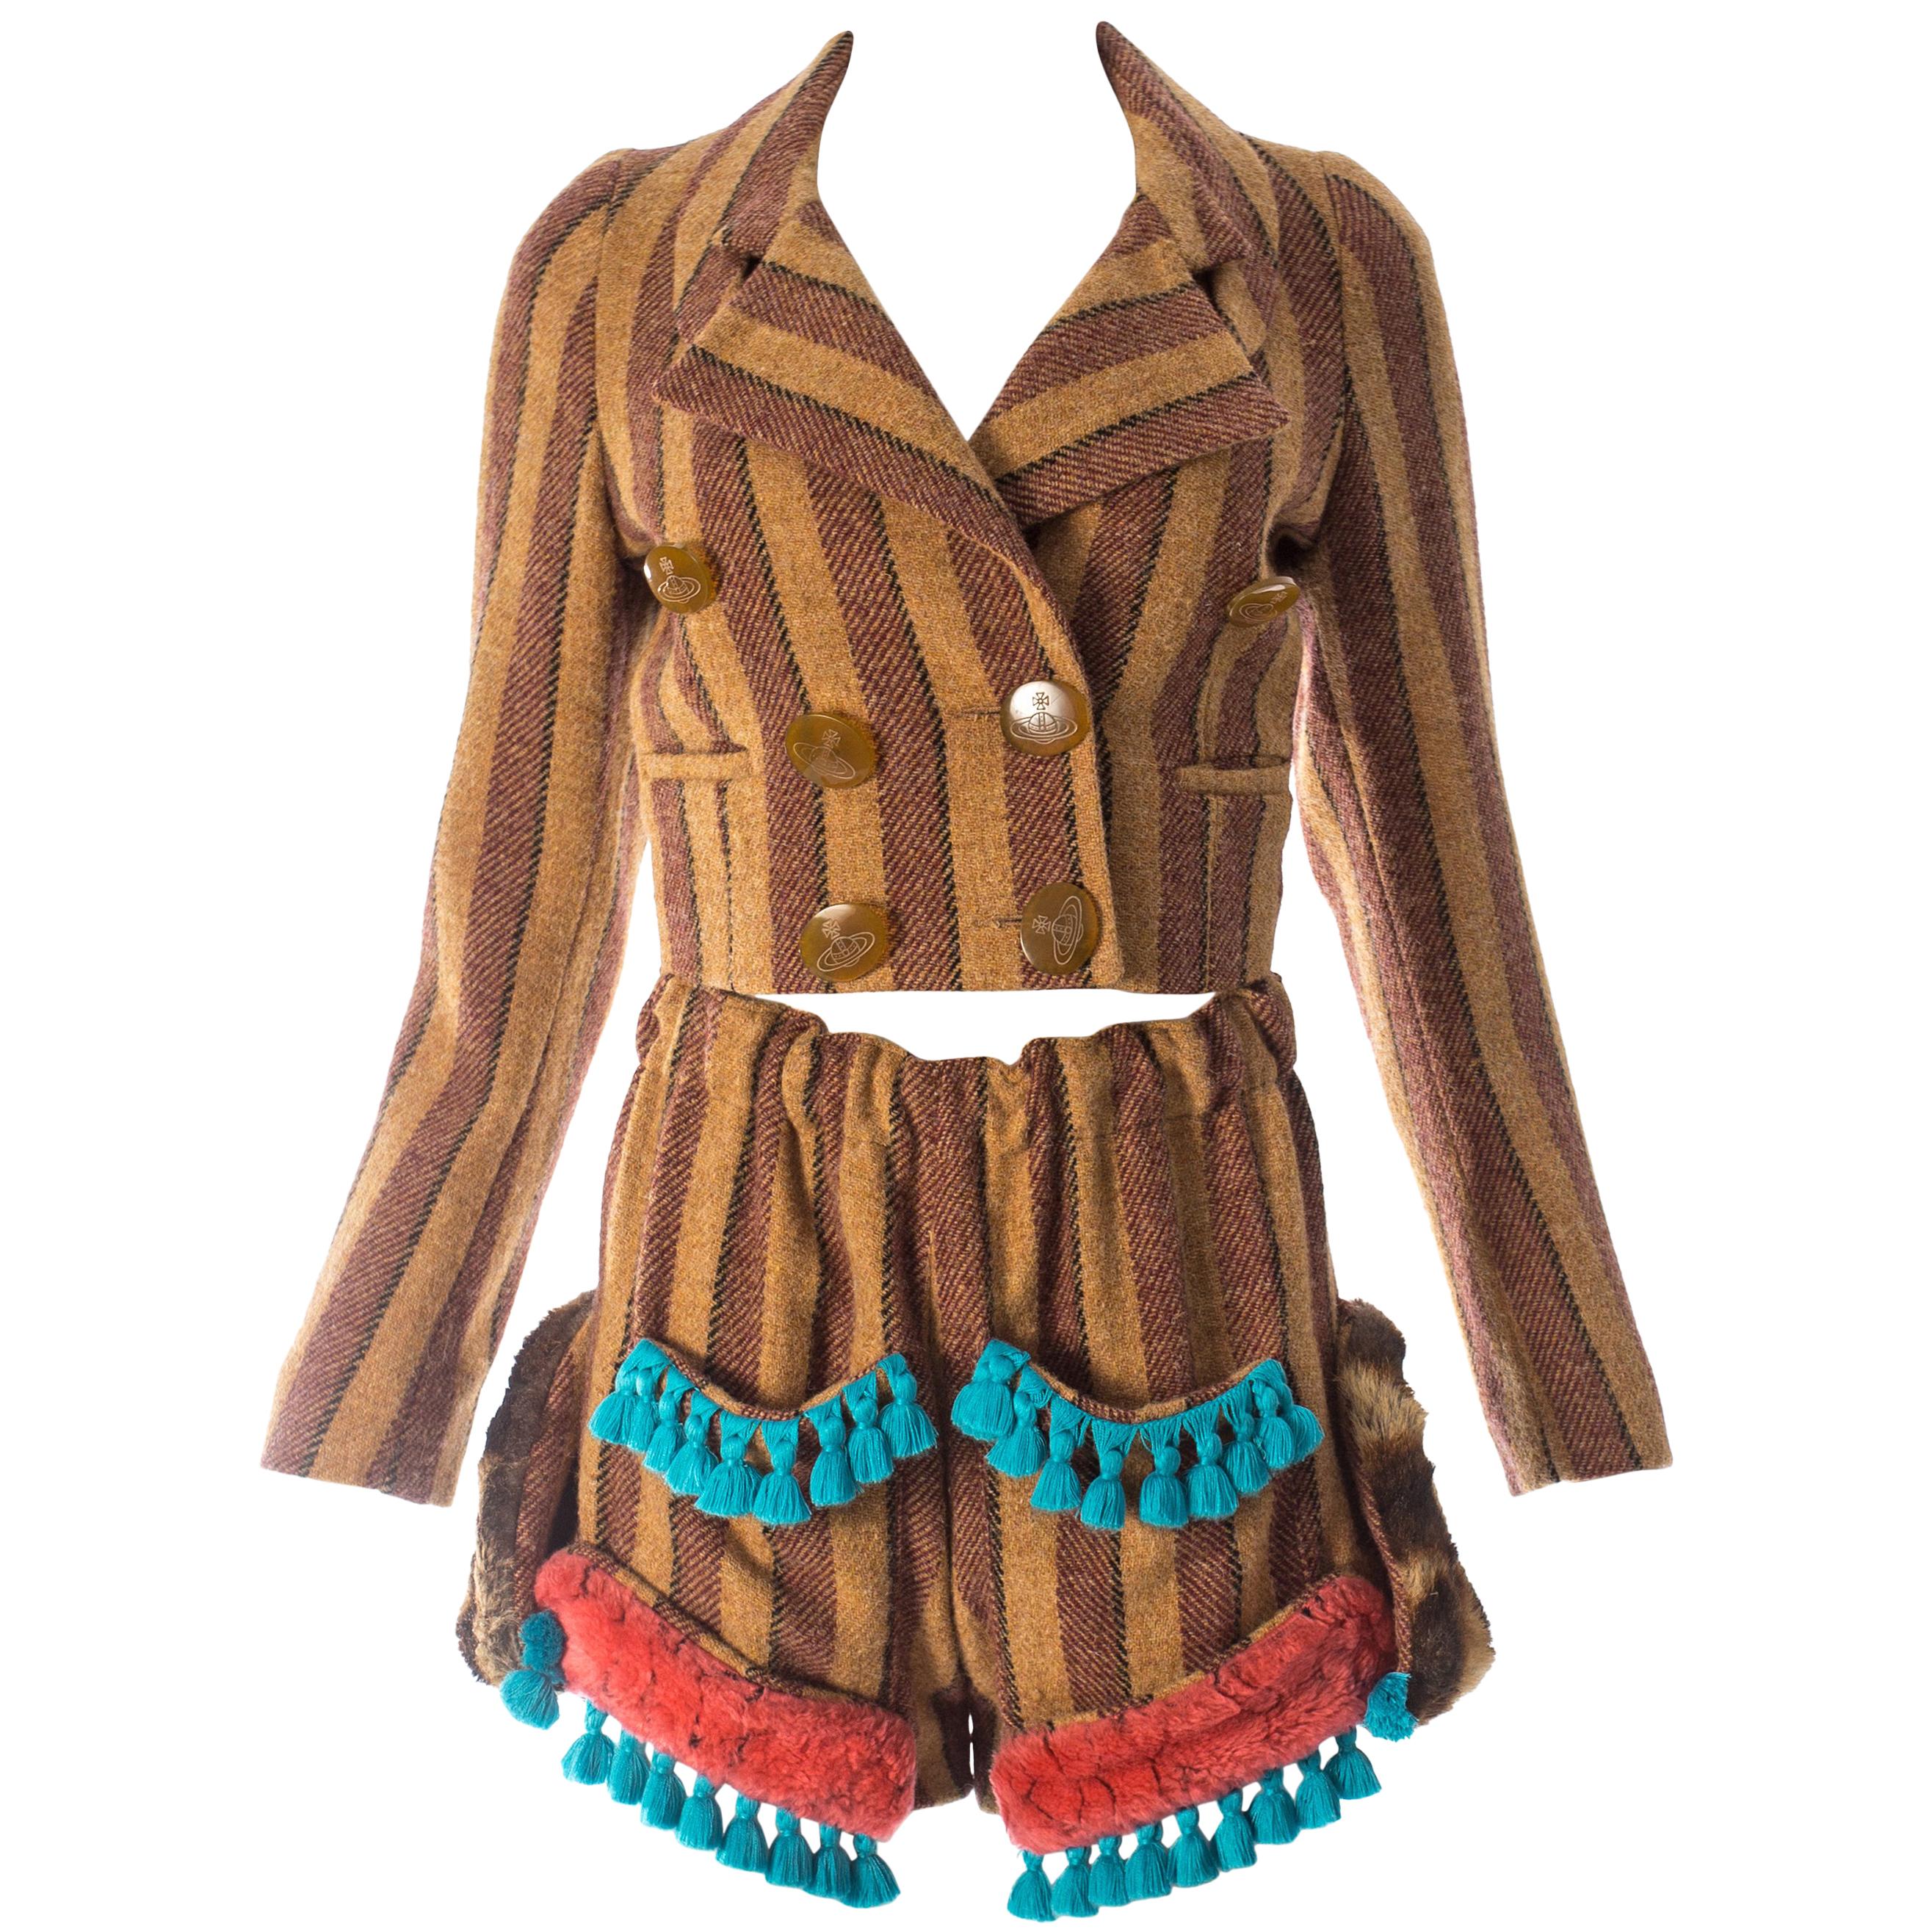 Vivivnne Westwood striped herringbone tweed short suit, fw 1990 For Sale